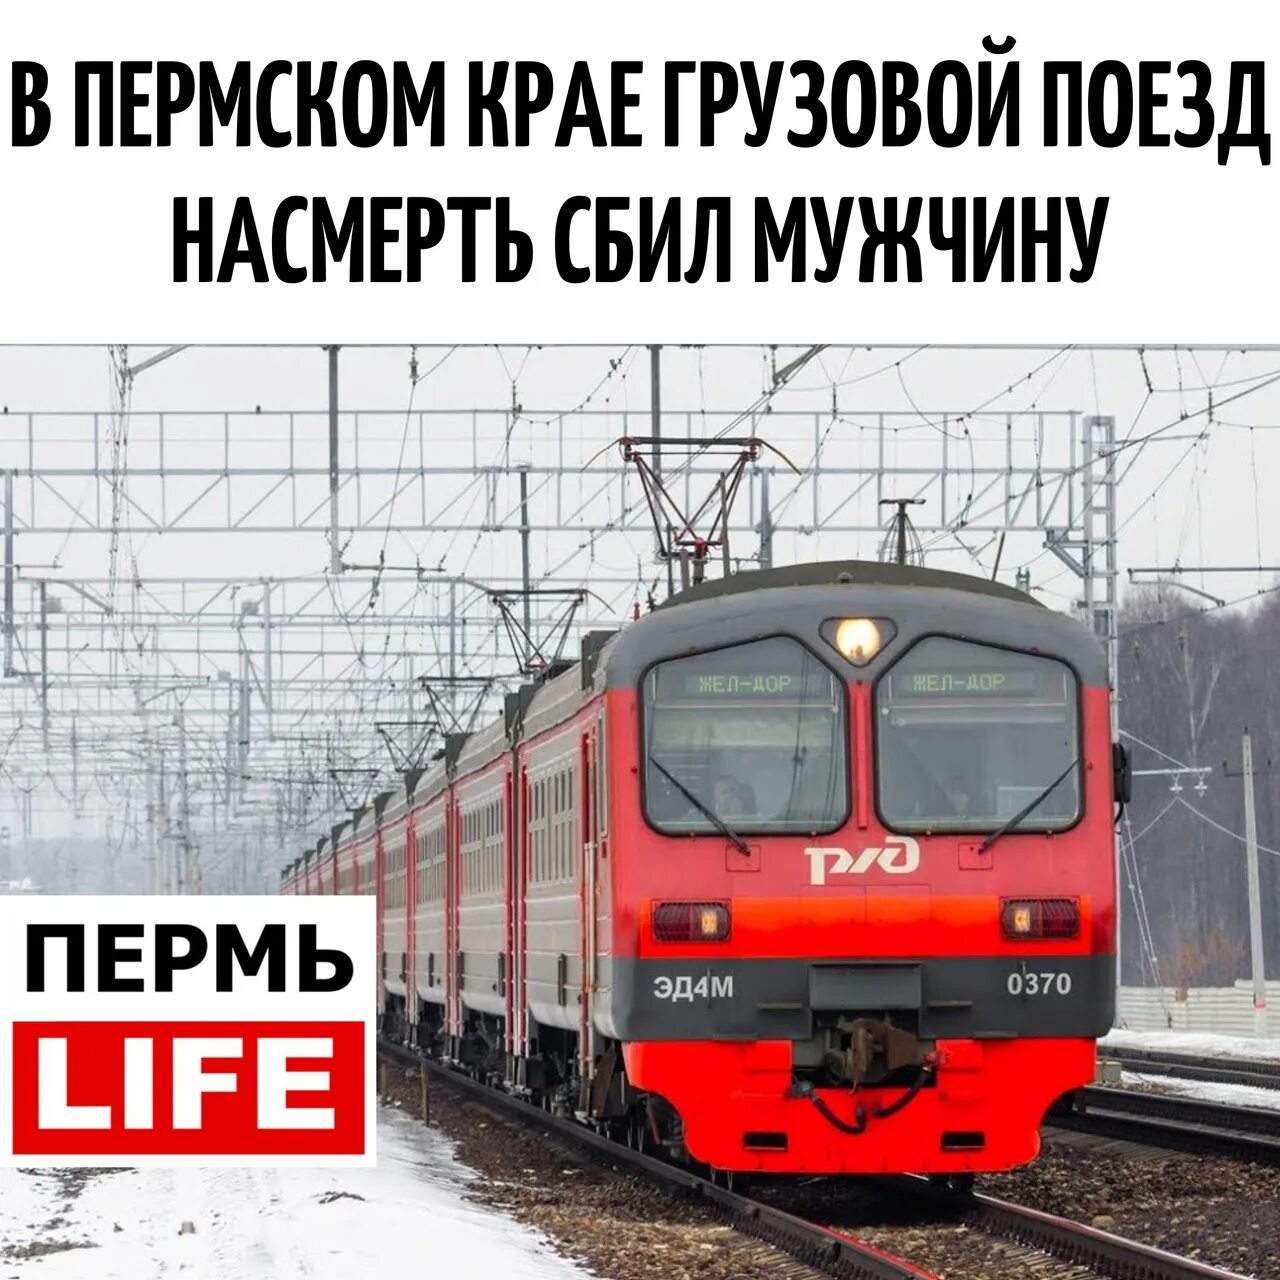 В Пермском крае грузовой поезд насмерть сбил мужчину. Электричка Пермь 2 Мулянка.